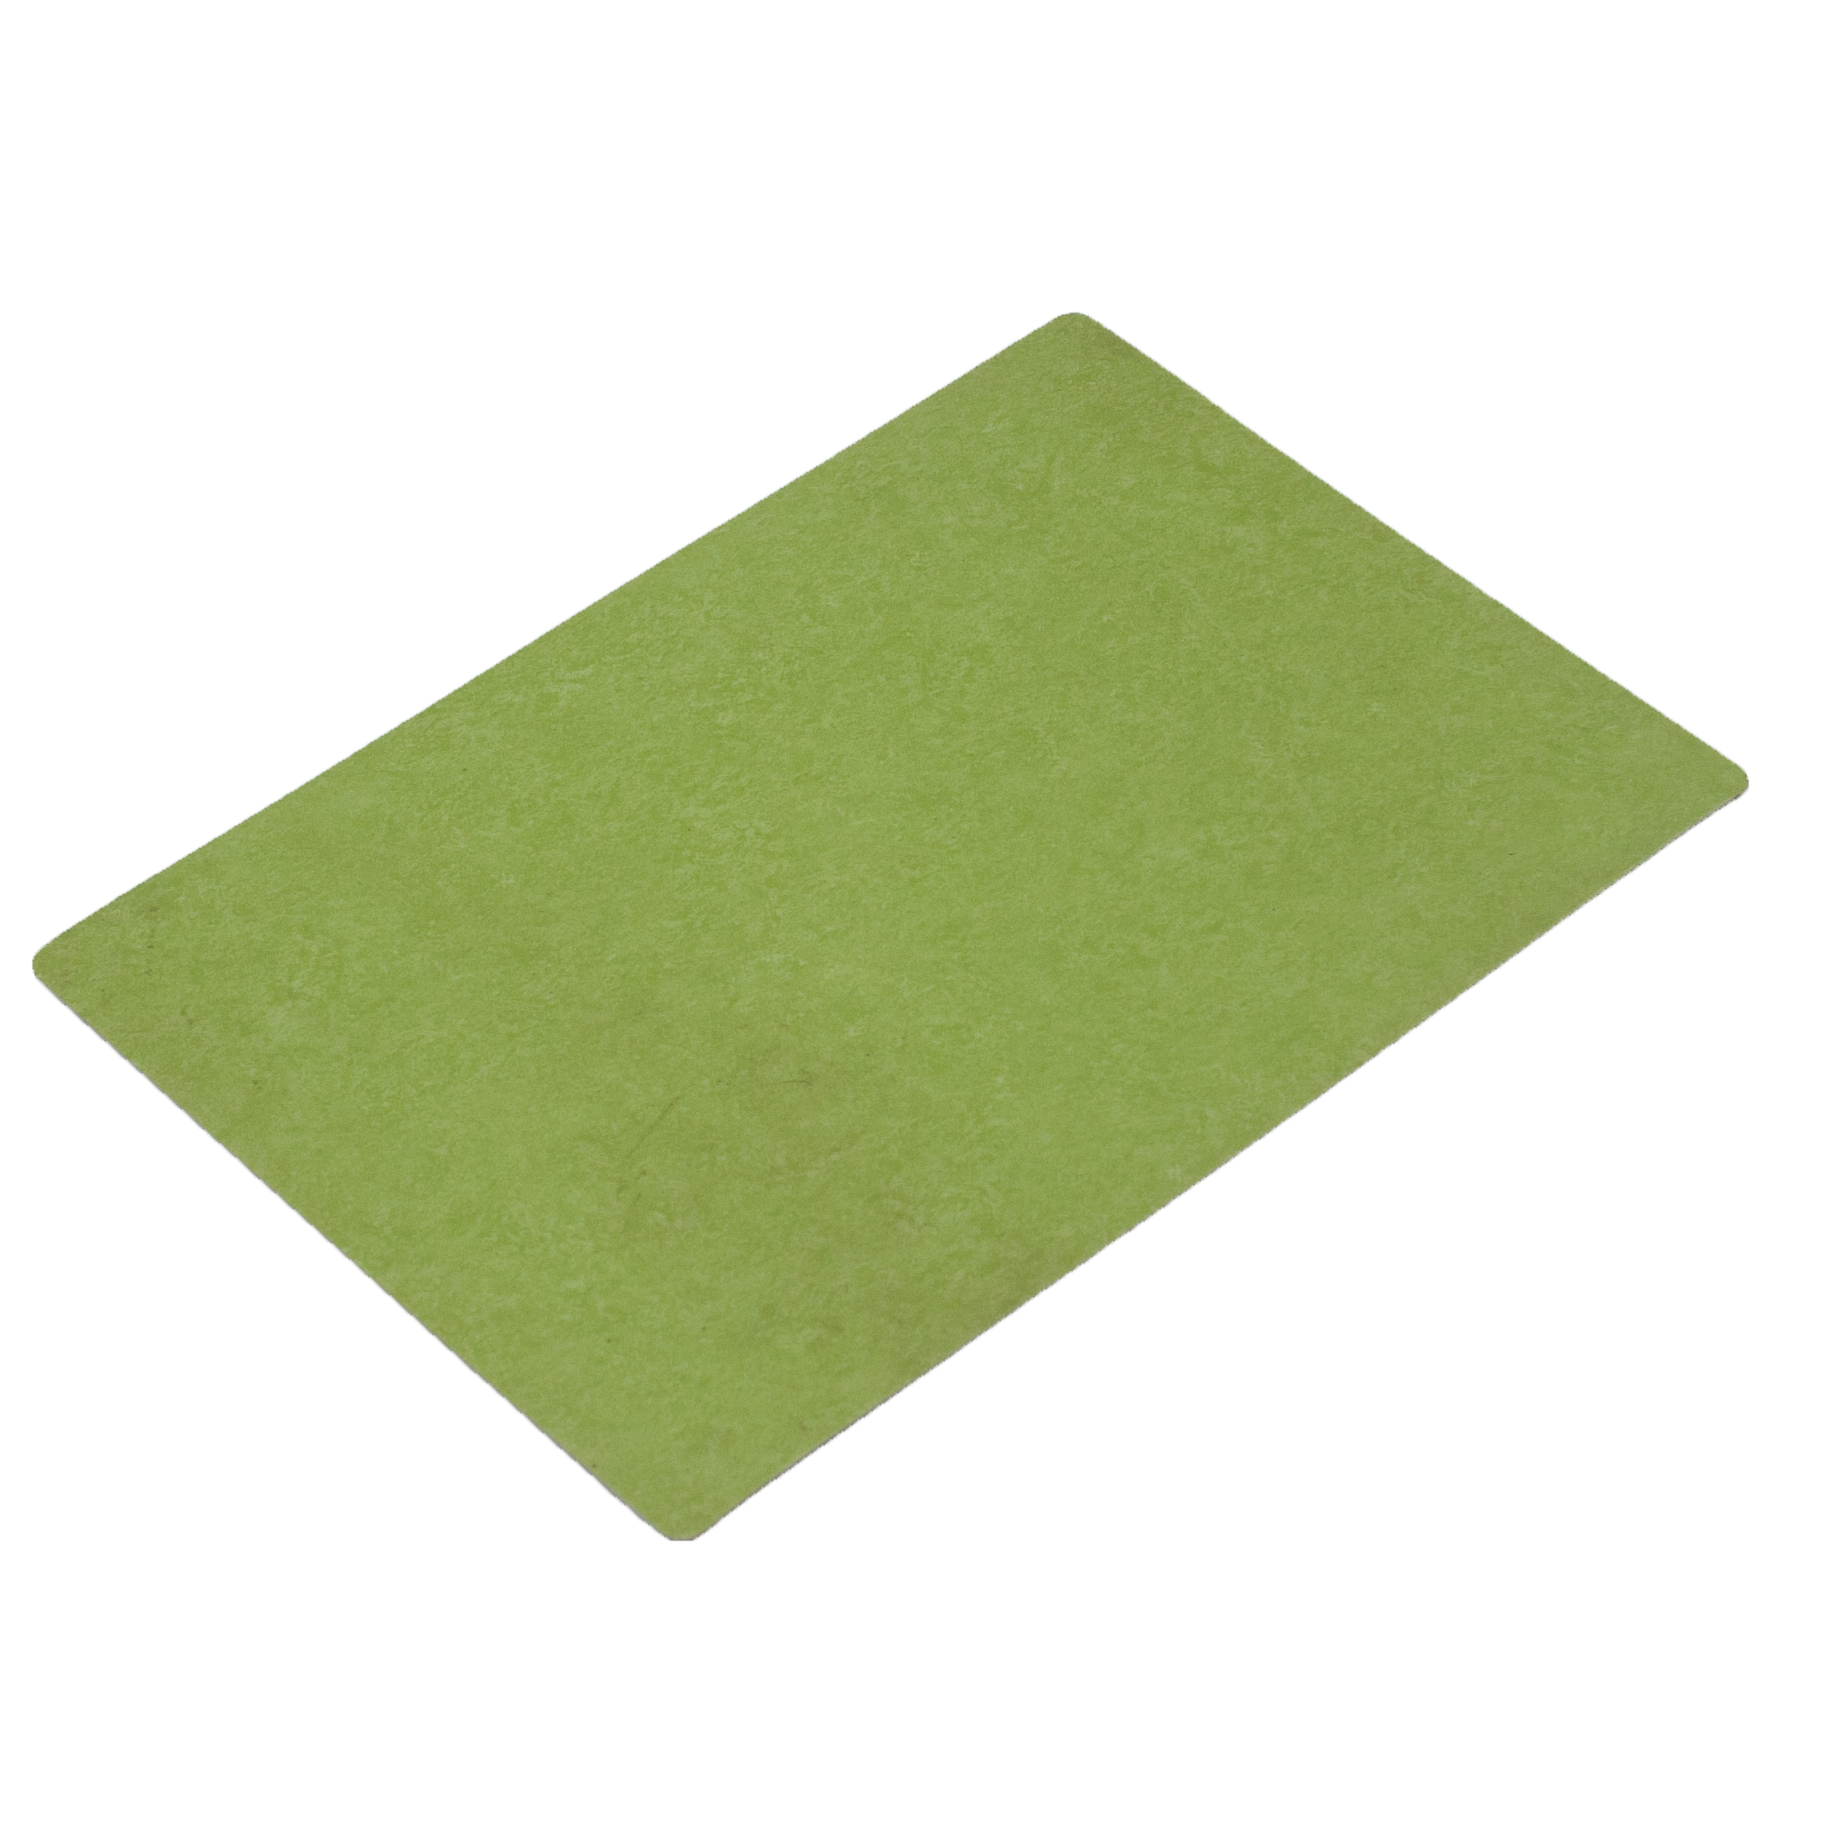 Green Fireproof PVC Flooring For Basement